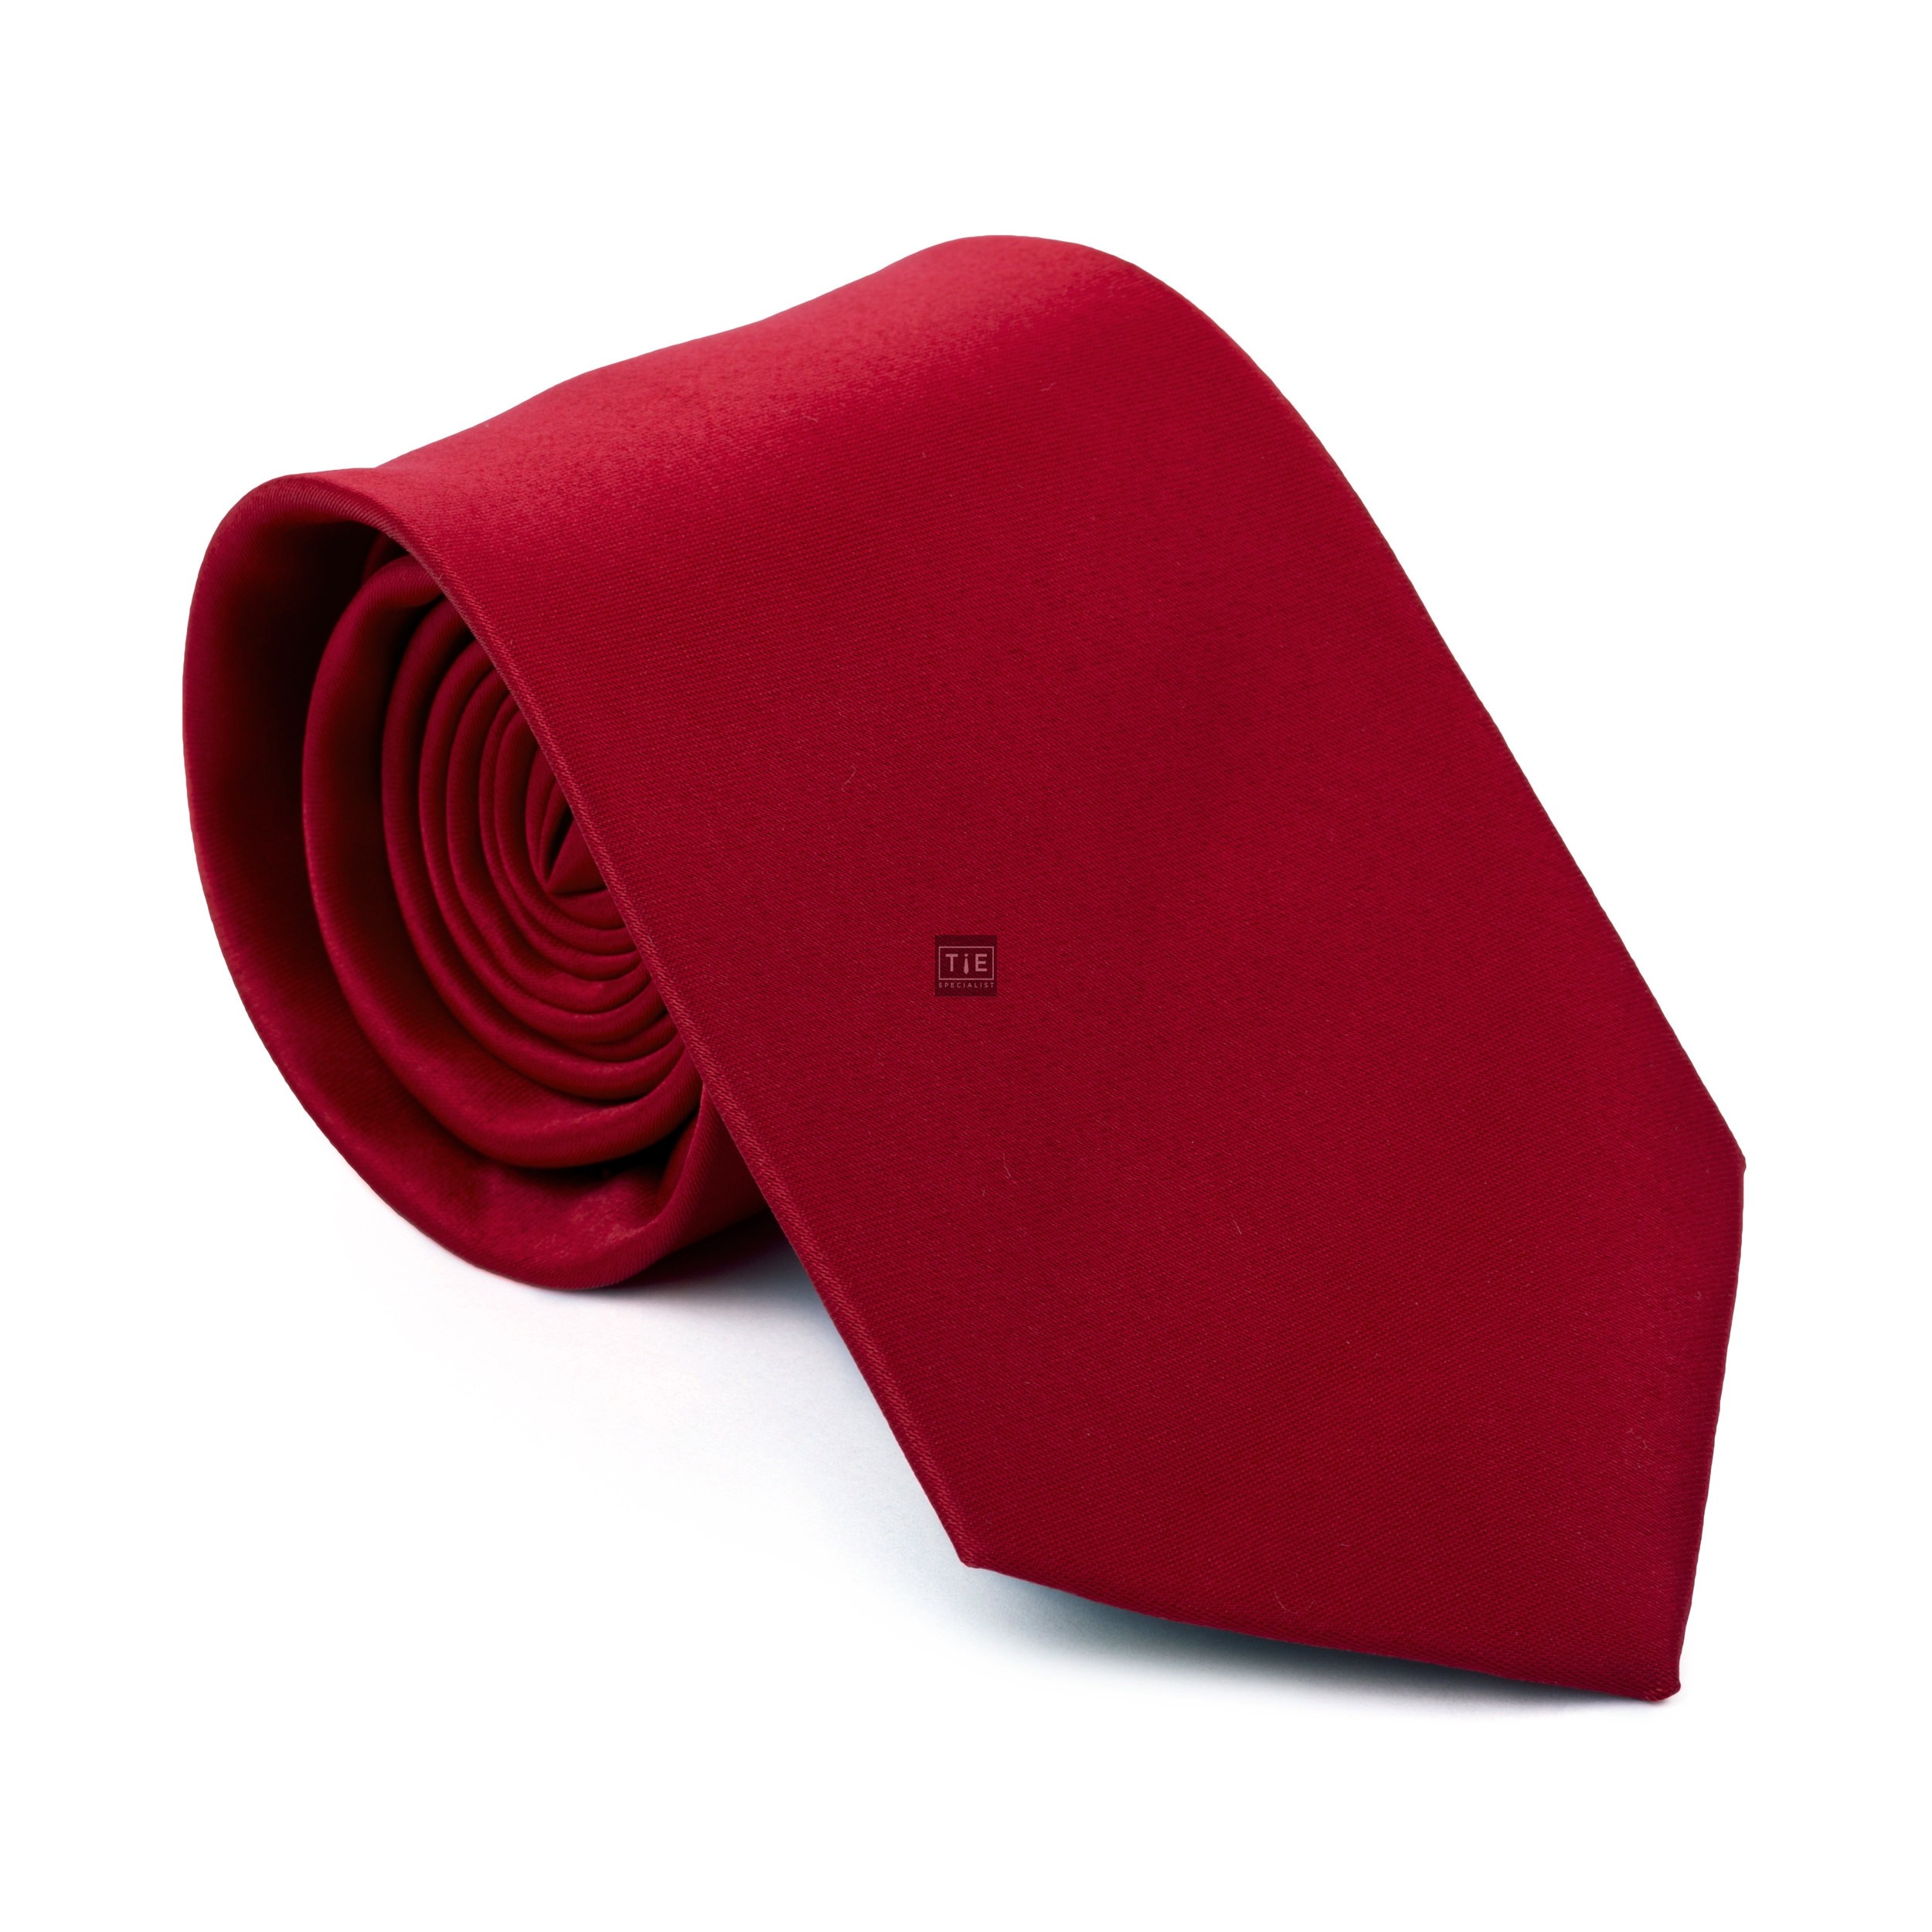 Jalapeno Red Tie